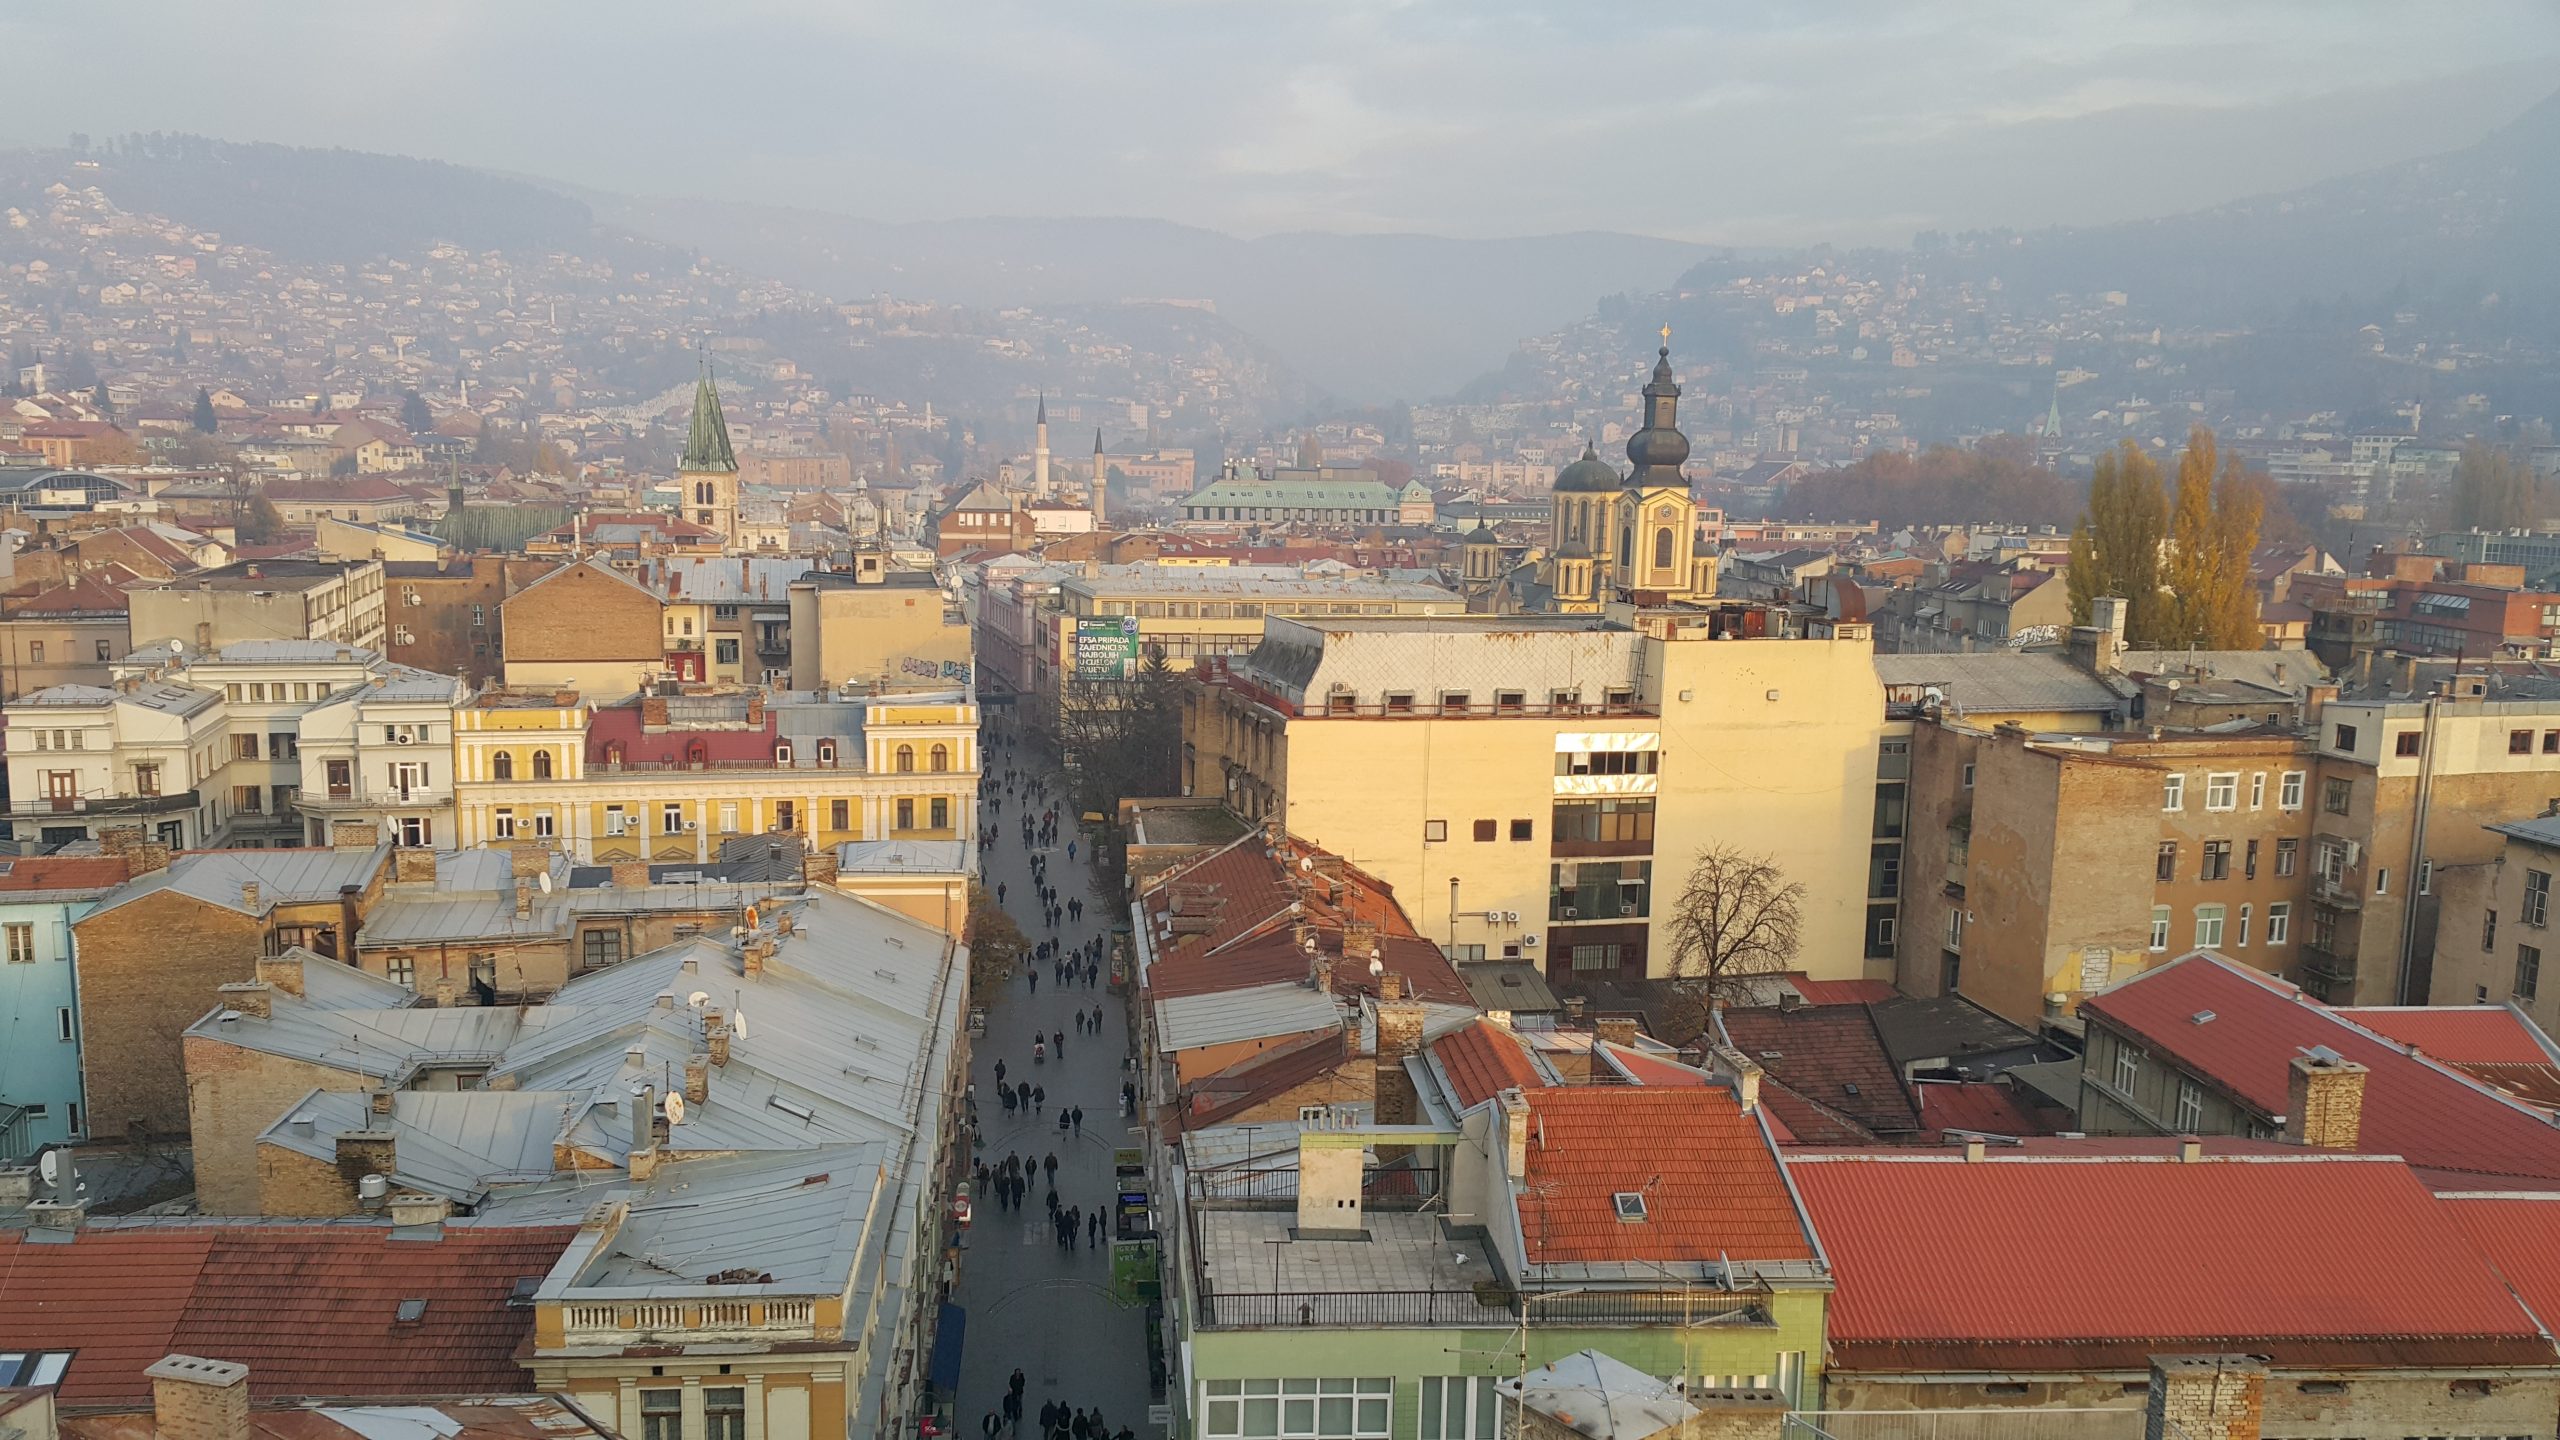 Bosna Hersek - Araçla Balkan Rotaları | Balkanları Gezmek için 4 Rota Önerisi